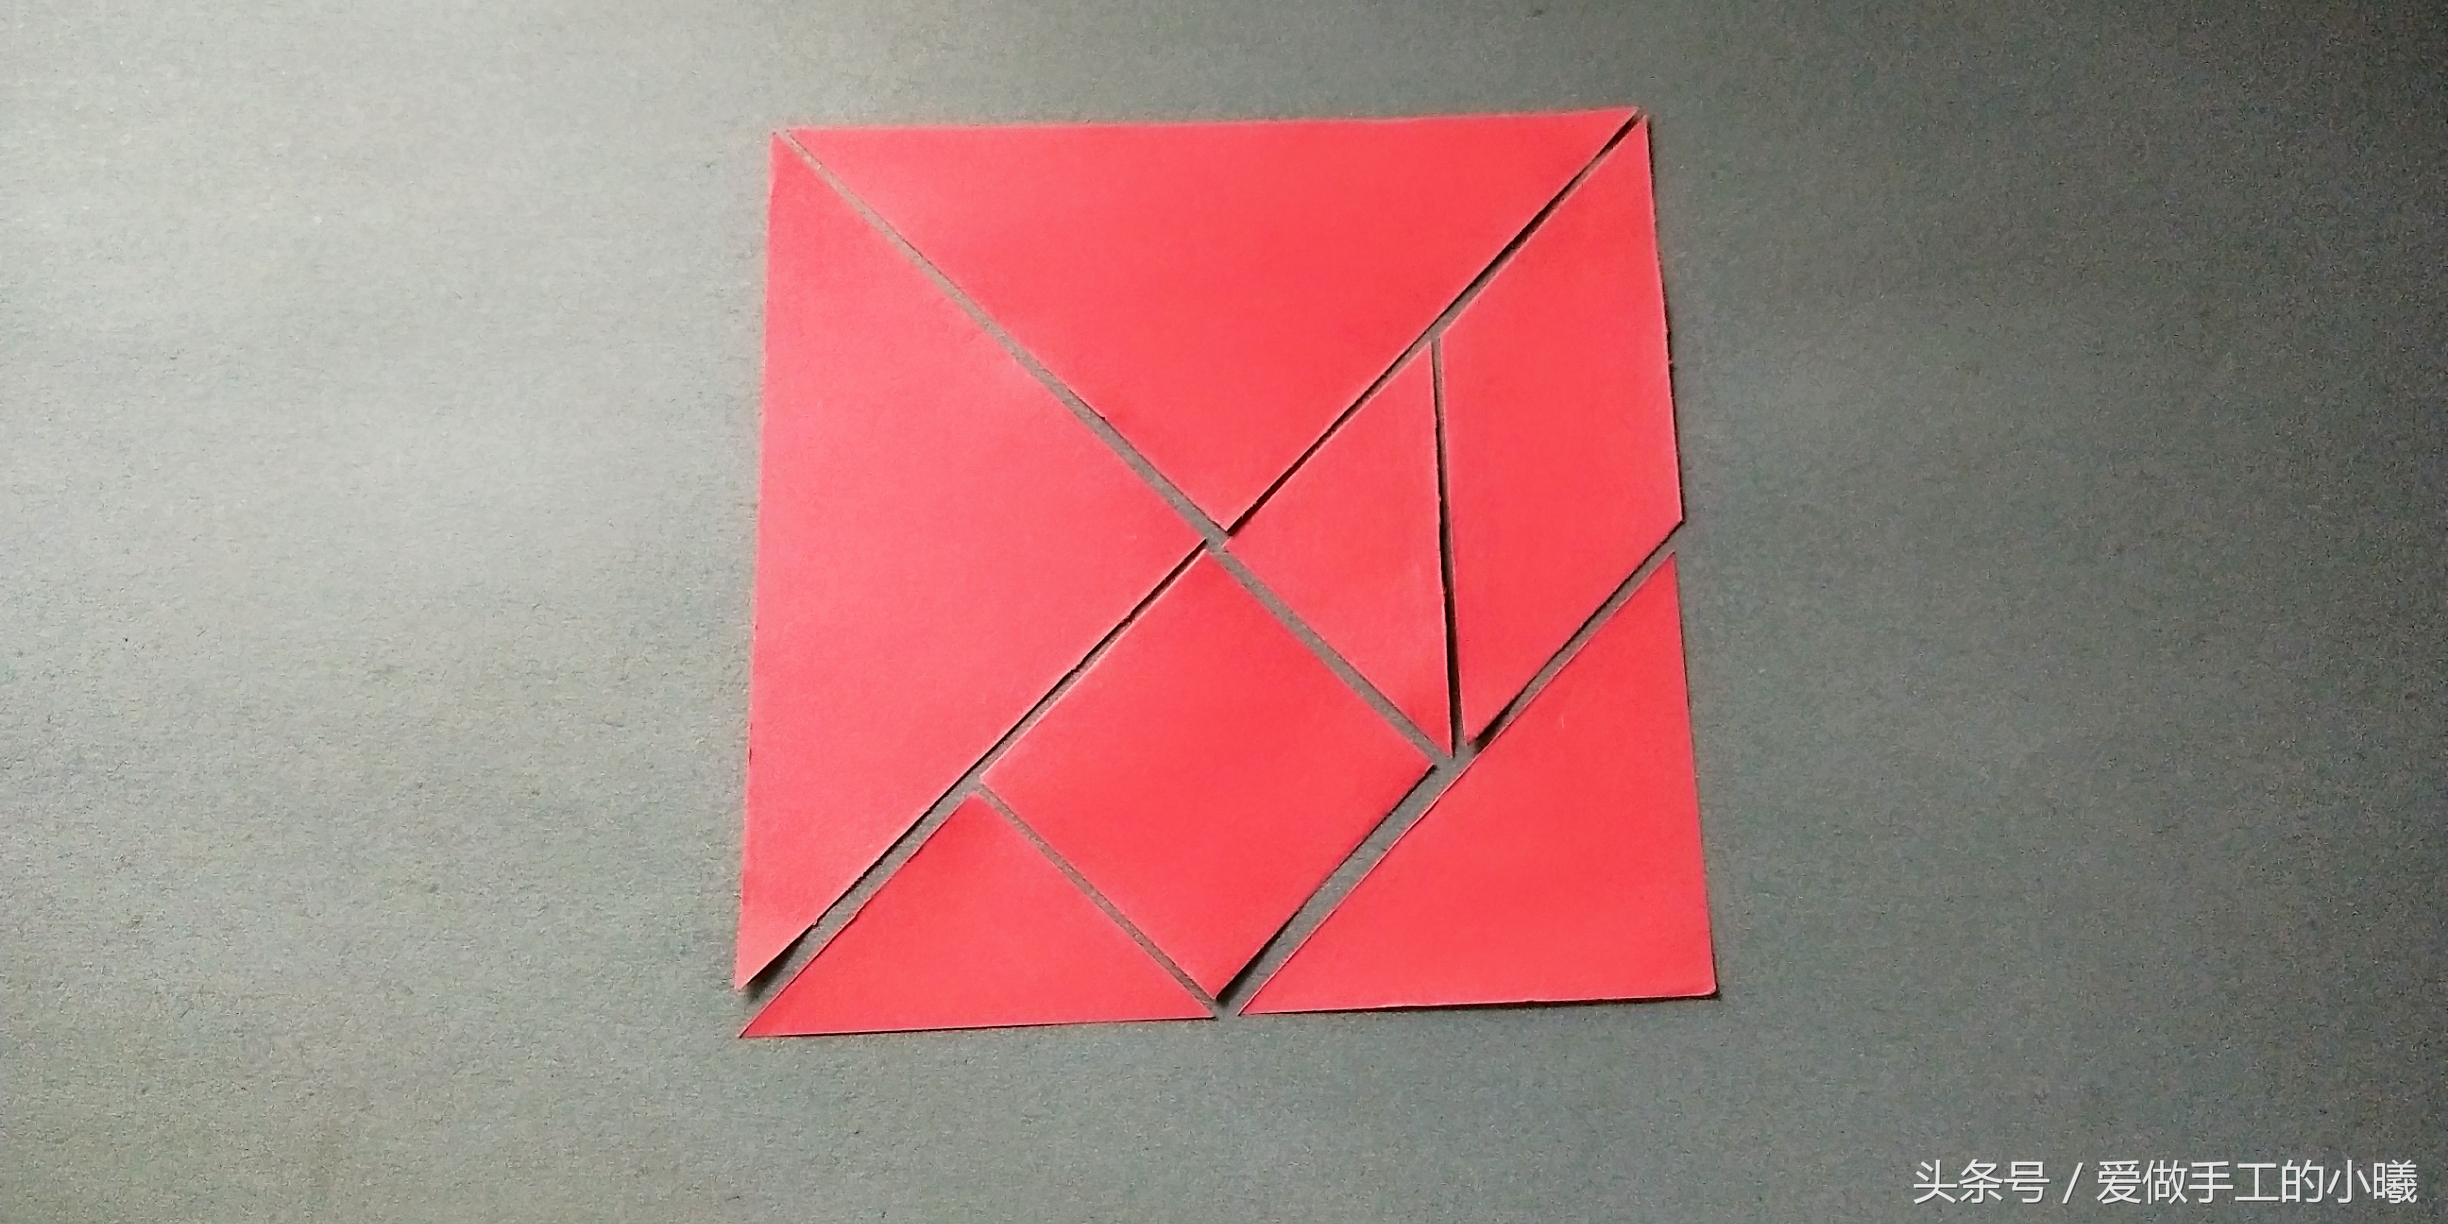 七巧板制作方法(教你用一张纸做一个简易七巧板)